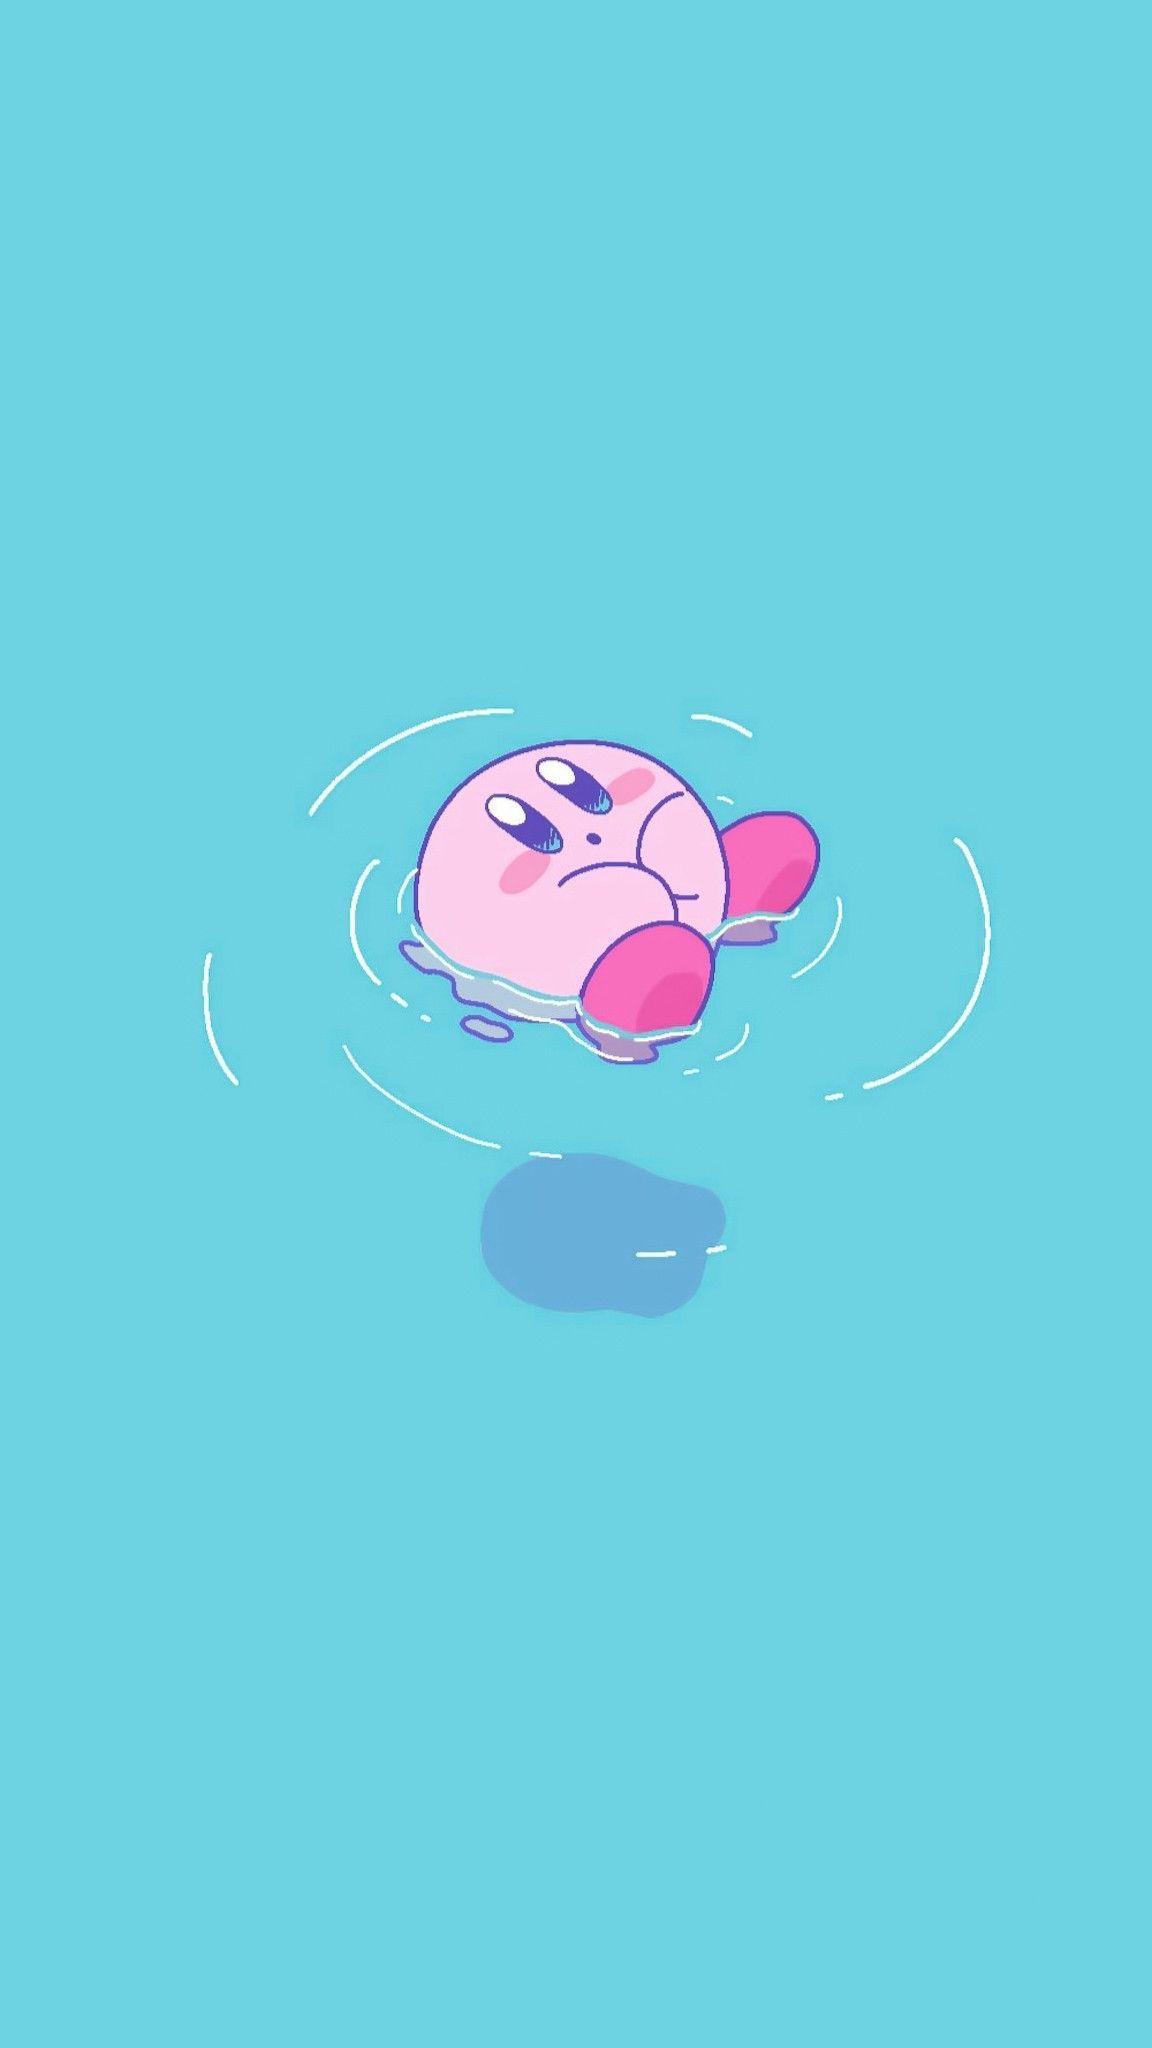 Tường hình đáng yêu Kirby uy tín sẽ cho bạn những trải nghiệm cực kỳ thú vị khi nhìn thấy các tấm hình đáng yêu về nhân vật này. Sở hữu những hình ảnh đẹp và sáng tạo về Kirby là điểm nhấn cho bất kỳ ai yêu thích trò chơi này.